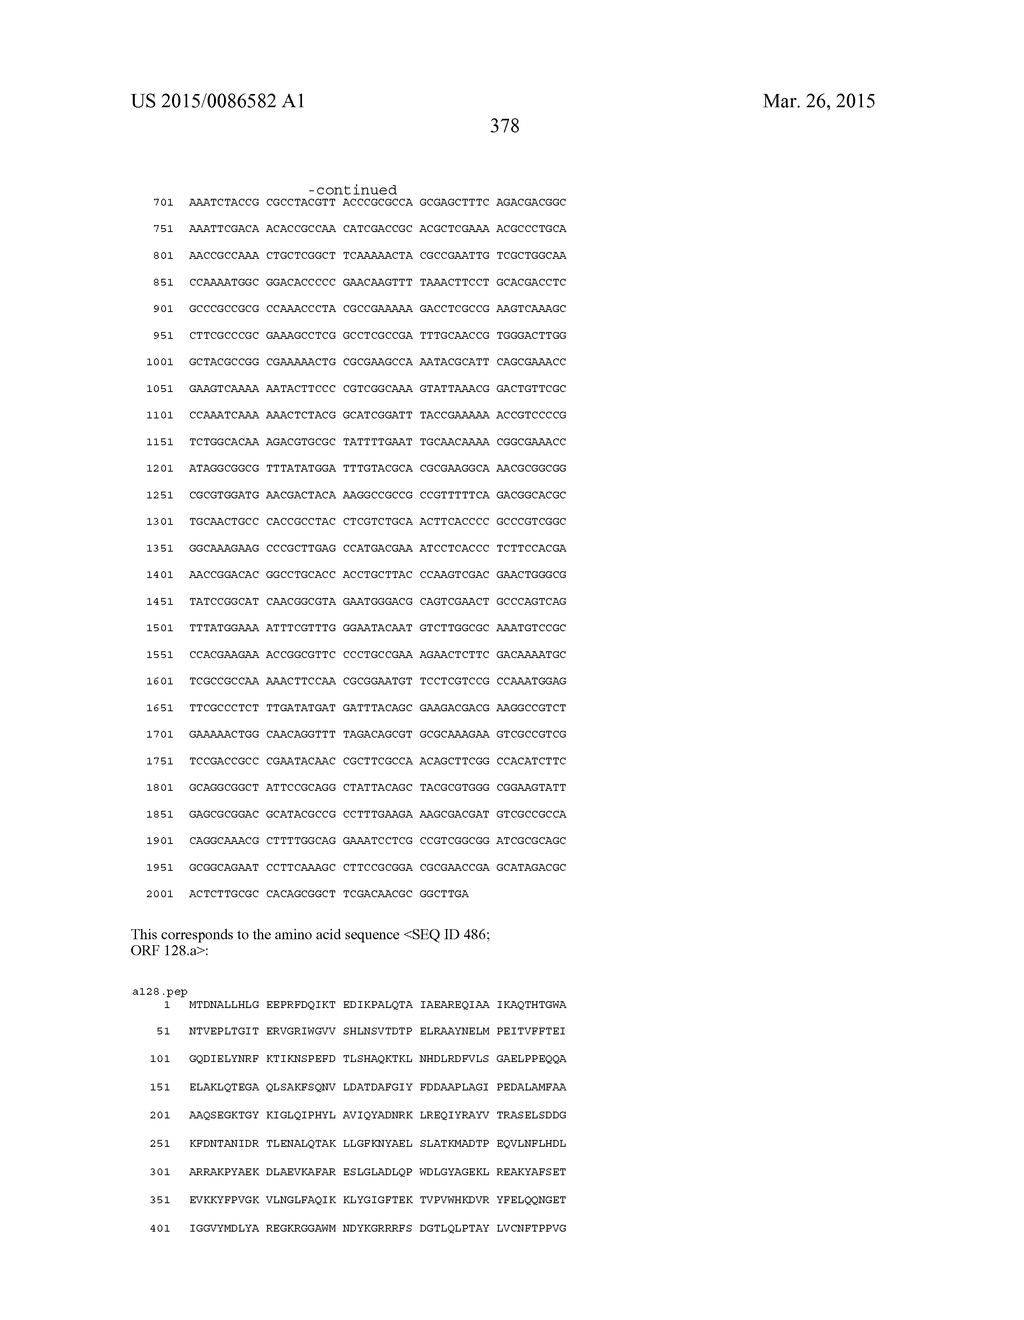 NEISSERIA MENINGITIDIS ANTIGENS AND COMPOSITIONS - diagram, schematic, and image 410